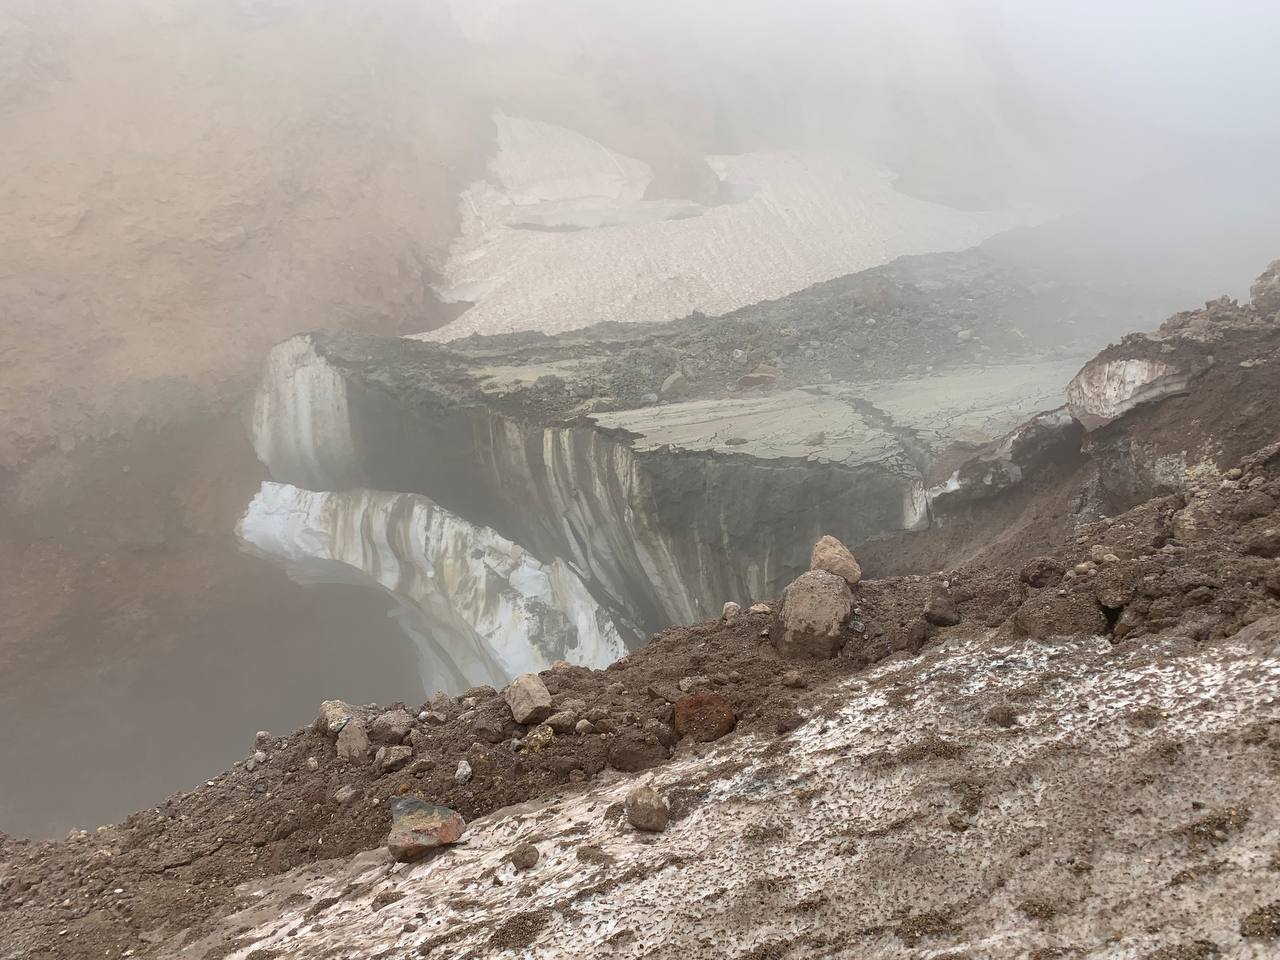 Сотрудники КФ ФИЦ ЕГС РАН провели первичный осмотр нового оползня в каньоне Мутновского вулкана